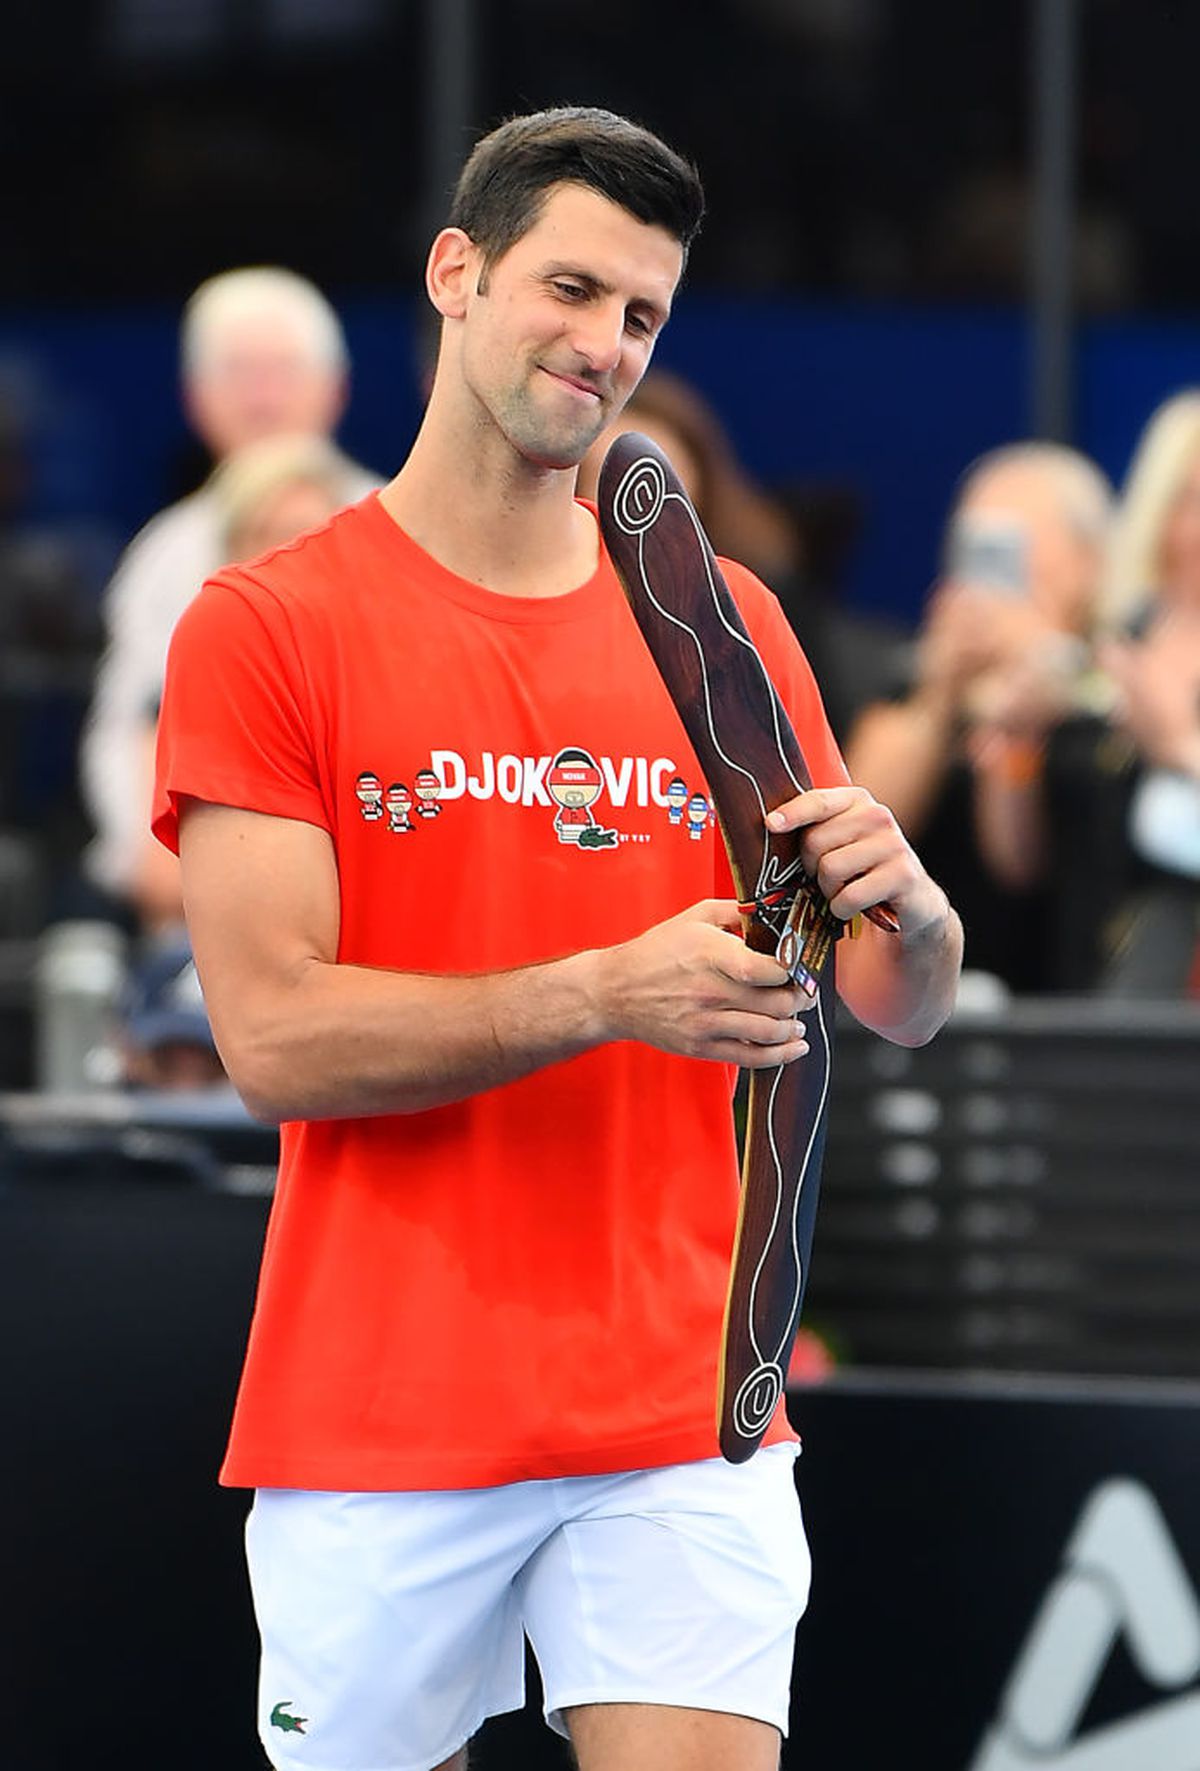 Novak Djokovic, demonstrativ la Adelaide / FOTO: Guliver/GettyImages